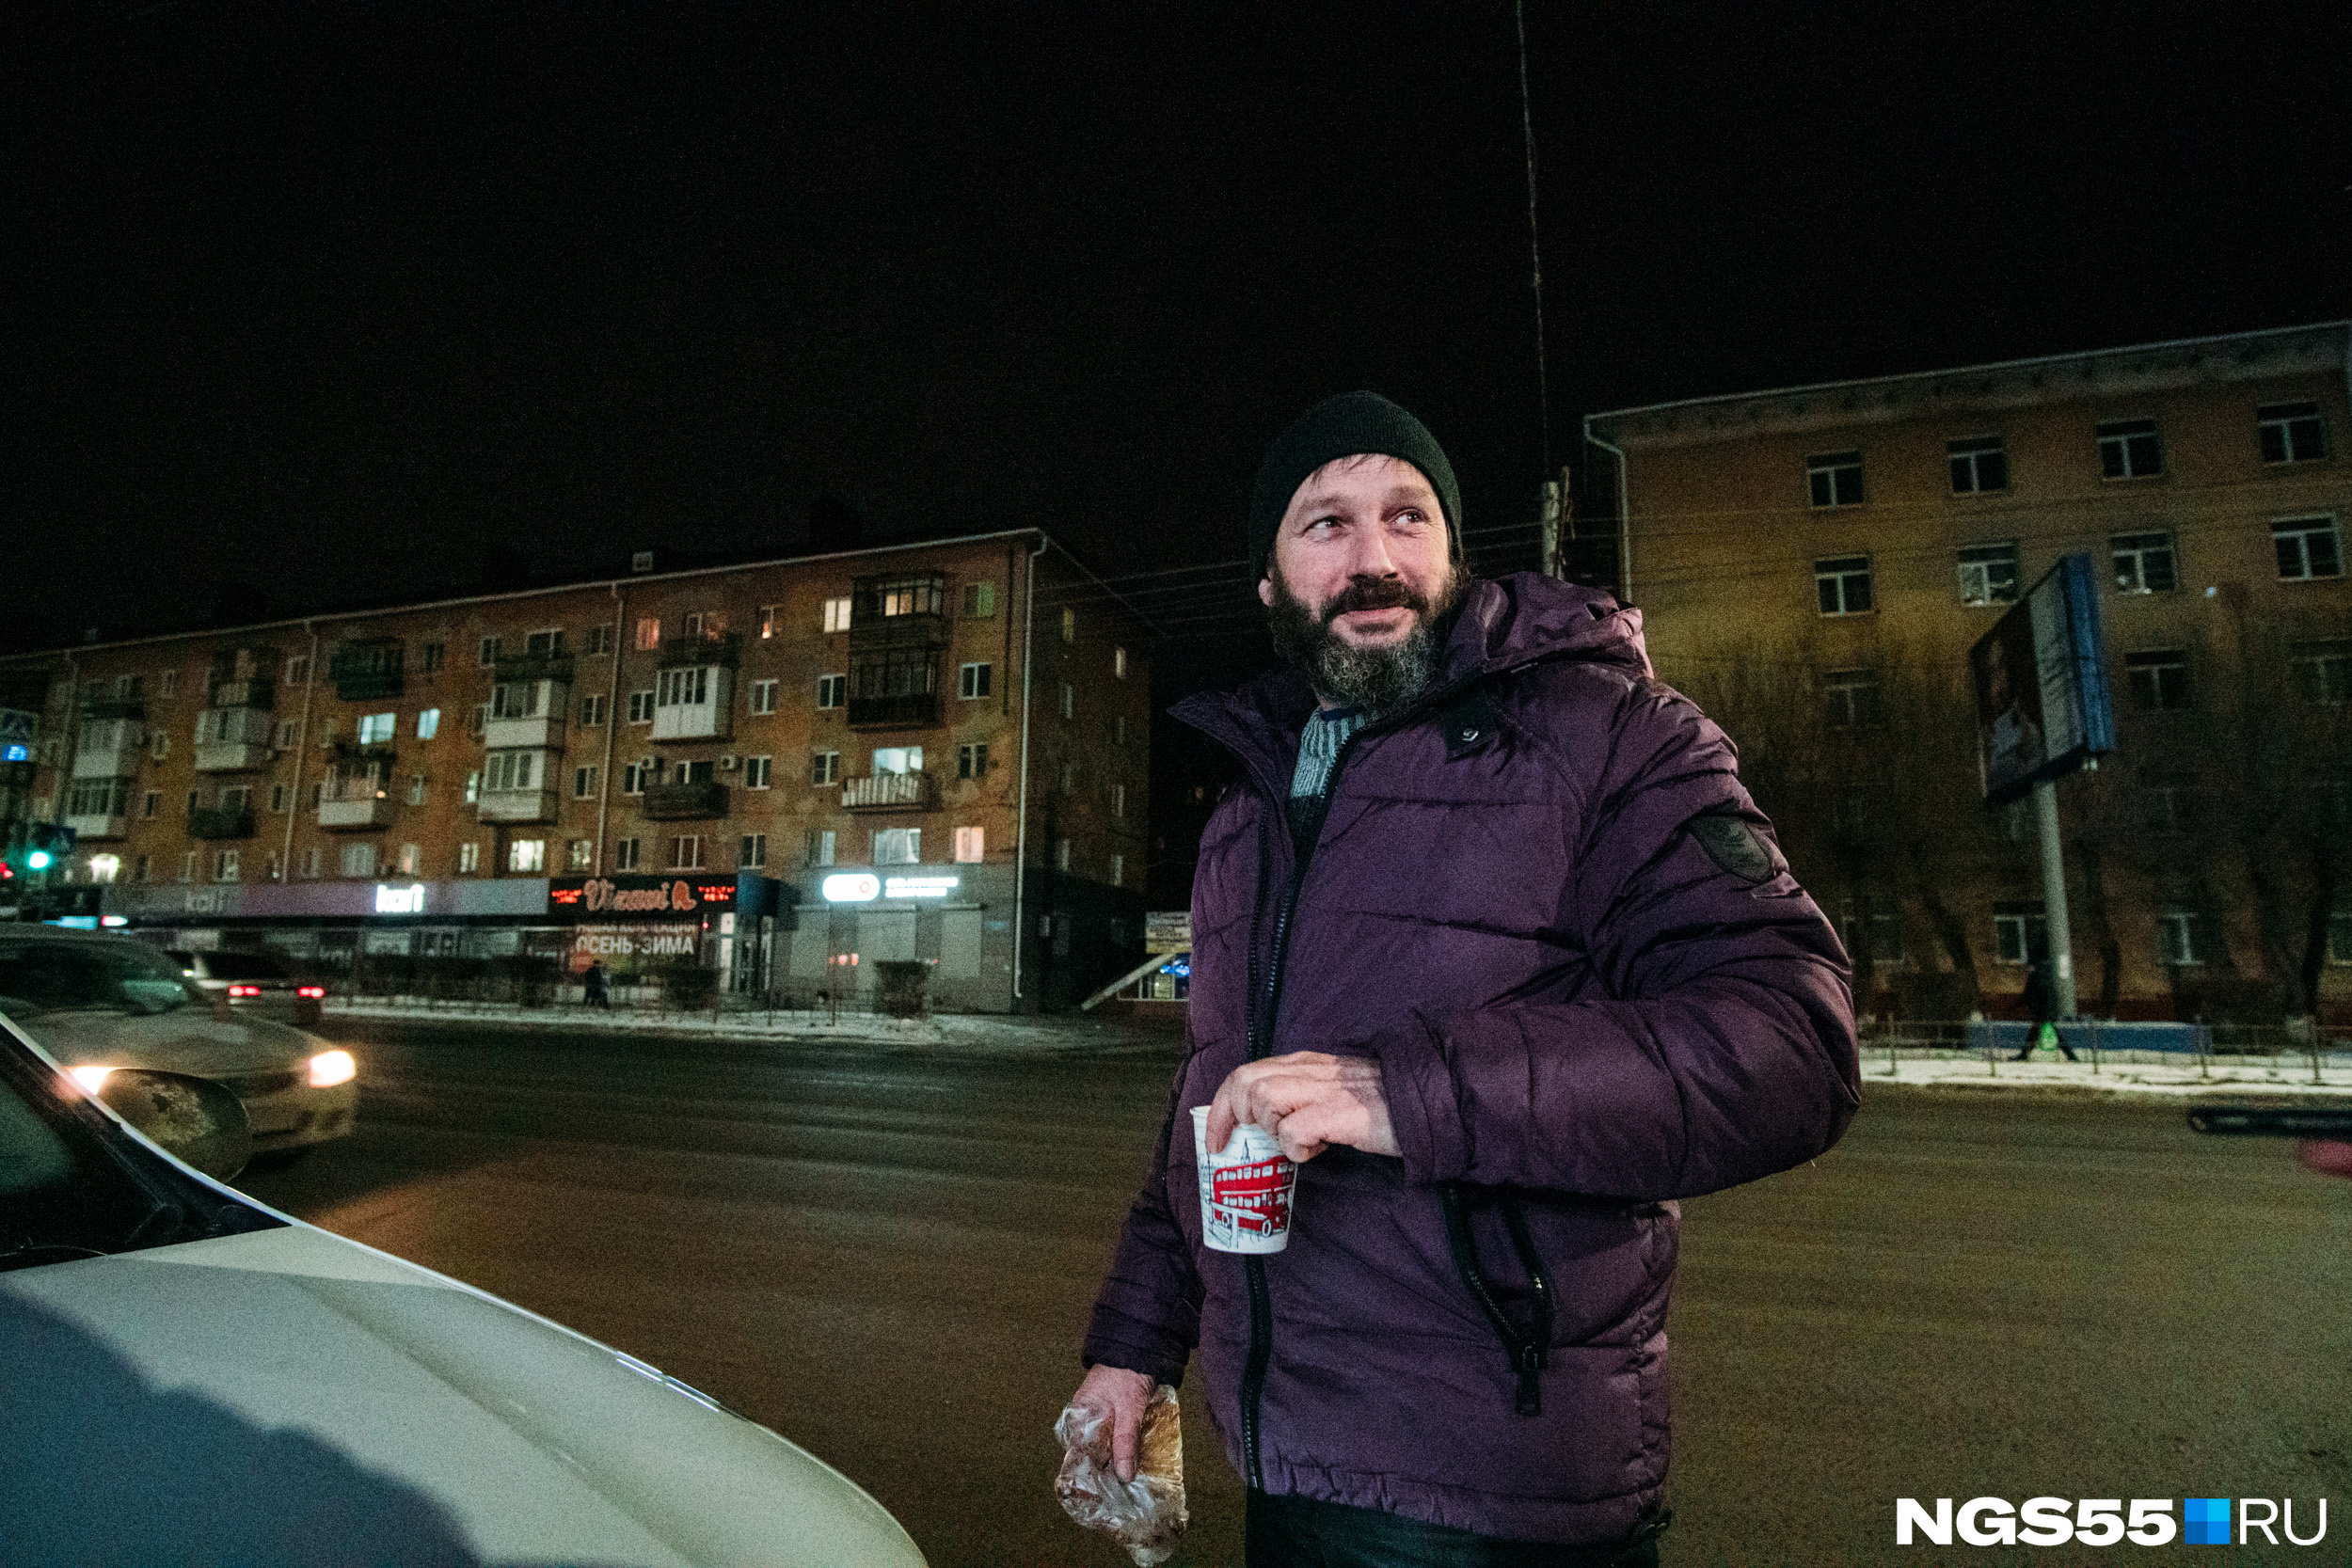 Таксиста Сергея Николаевича на соседней остановке ждет жена. Он забирает ее с работы и по пути покупает для нее беляш. Есть в этом что-то милое